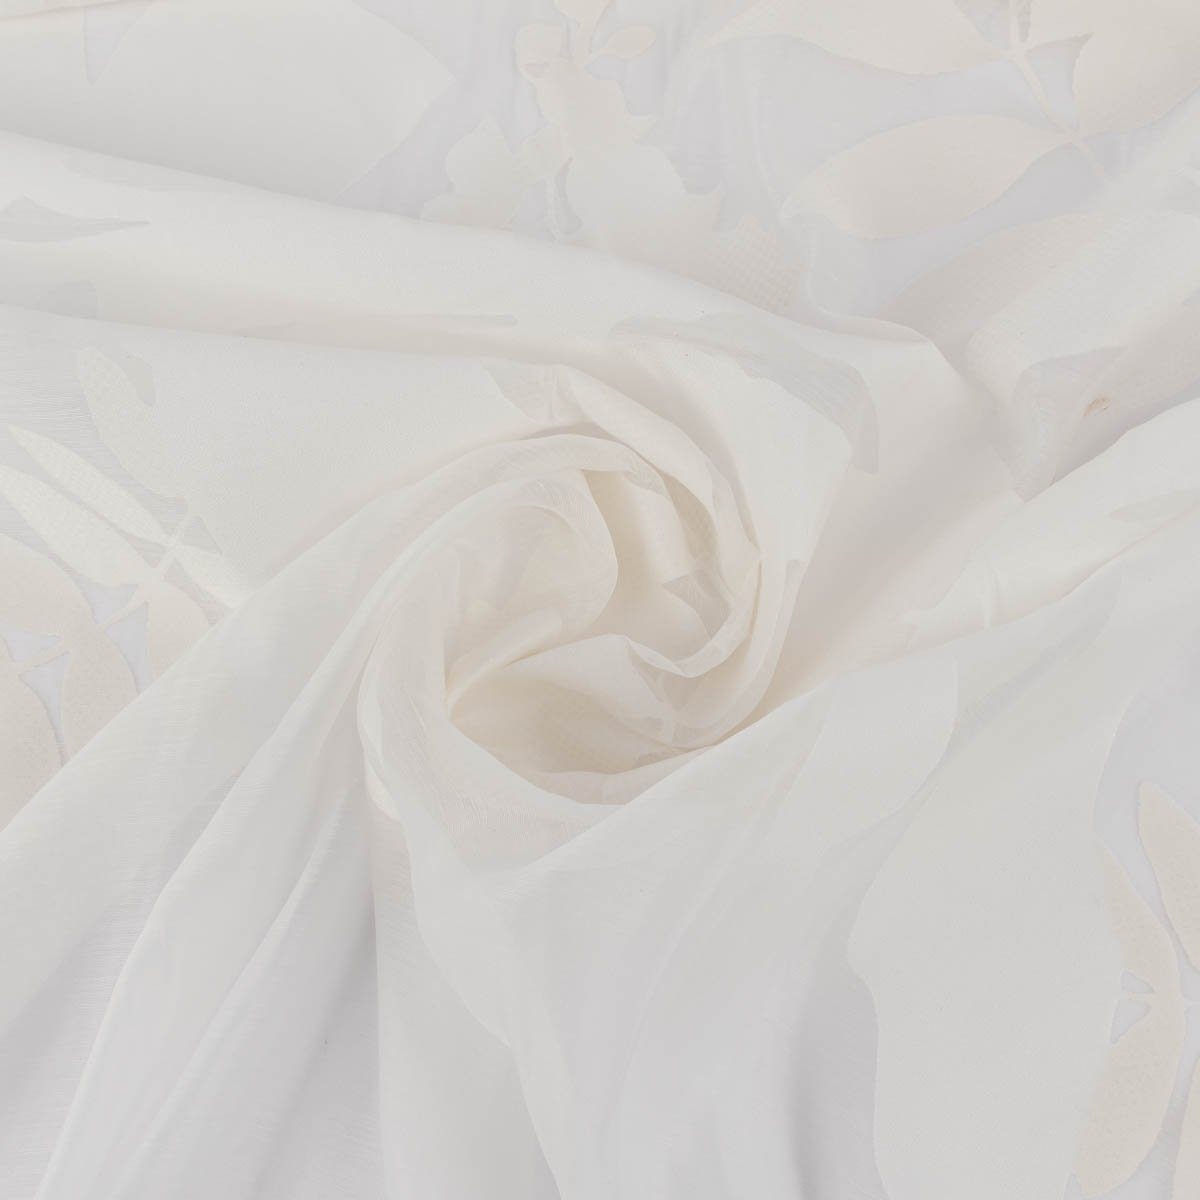 Textil Bleiband, überbreit 295cm, Madagaskar mit leicht perforiert, Rasch Gardinenstoff Meterware Organza, weiß Blätter Ausbrenner